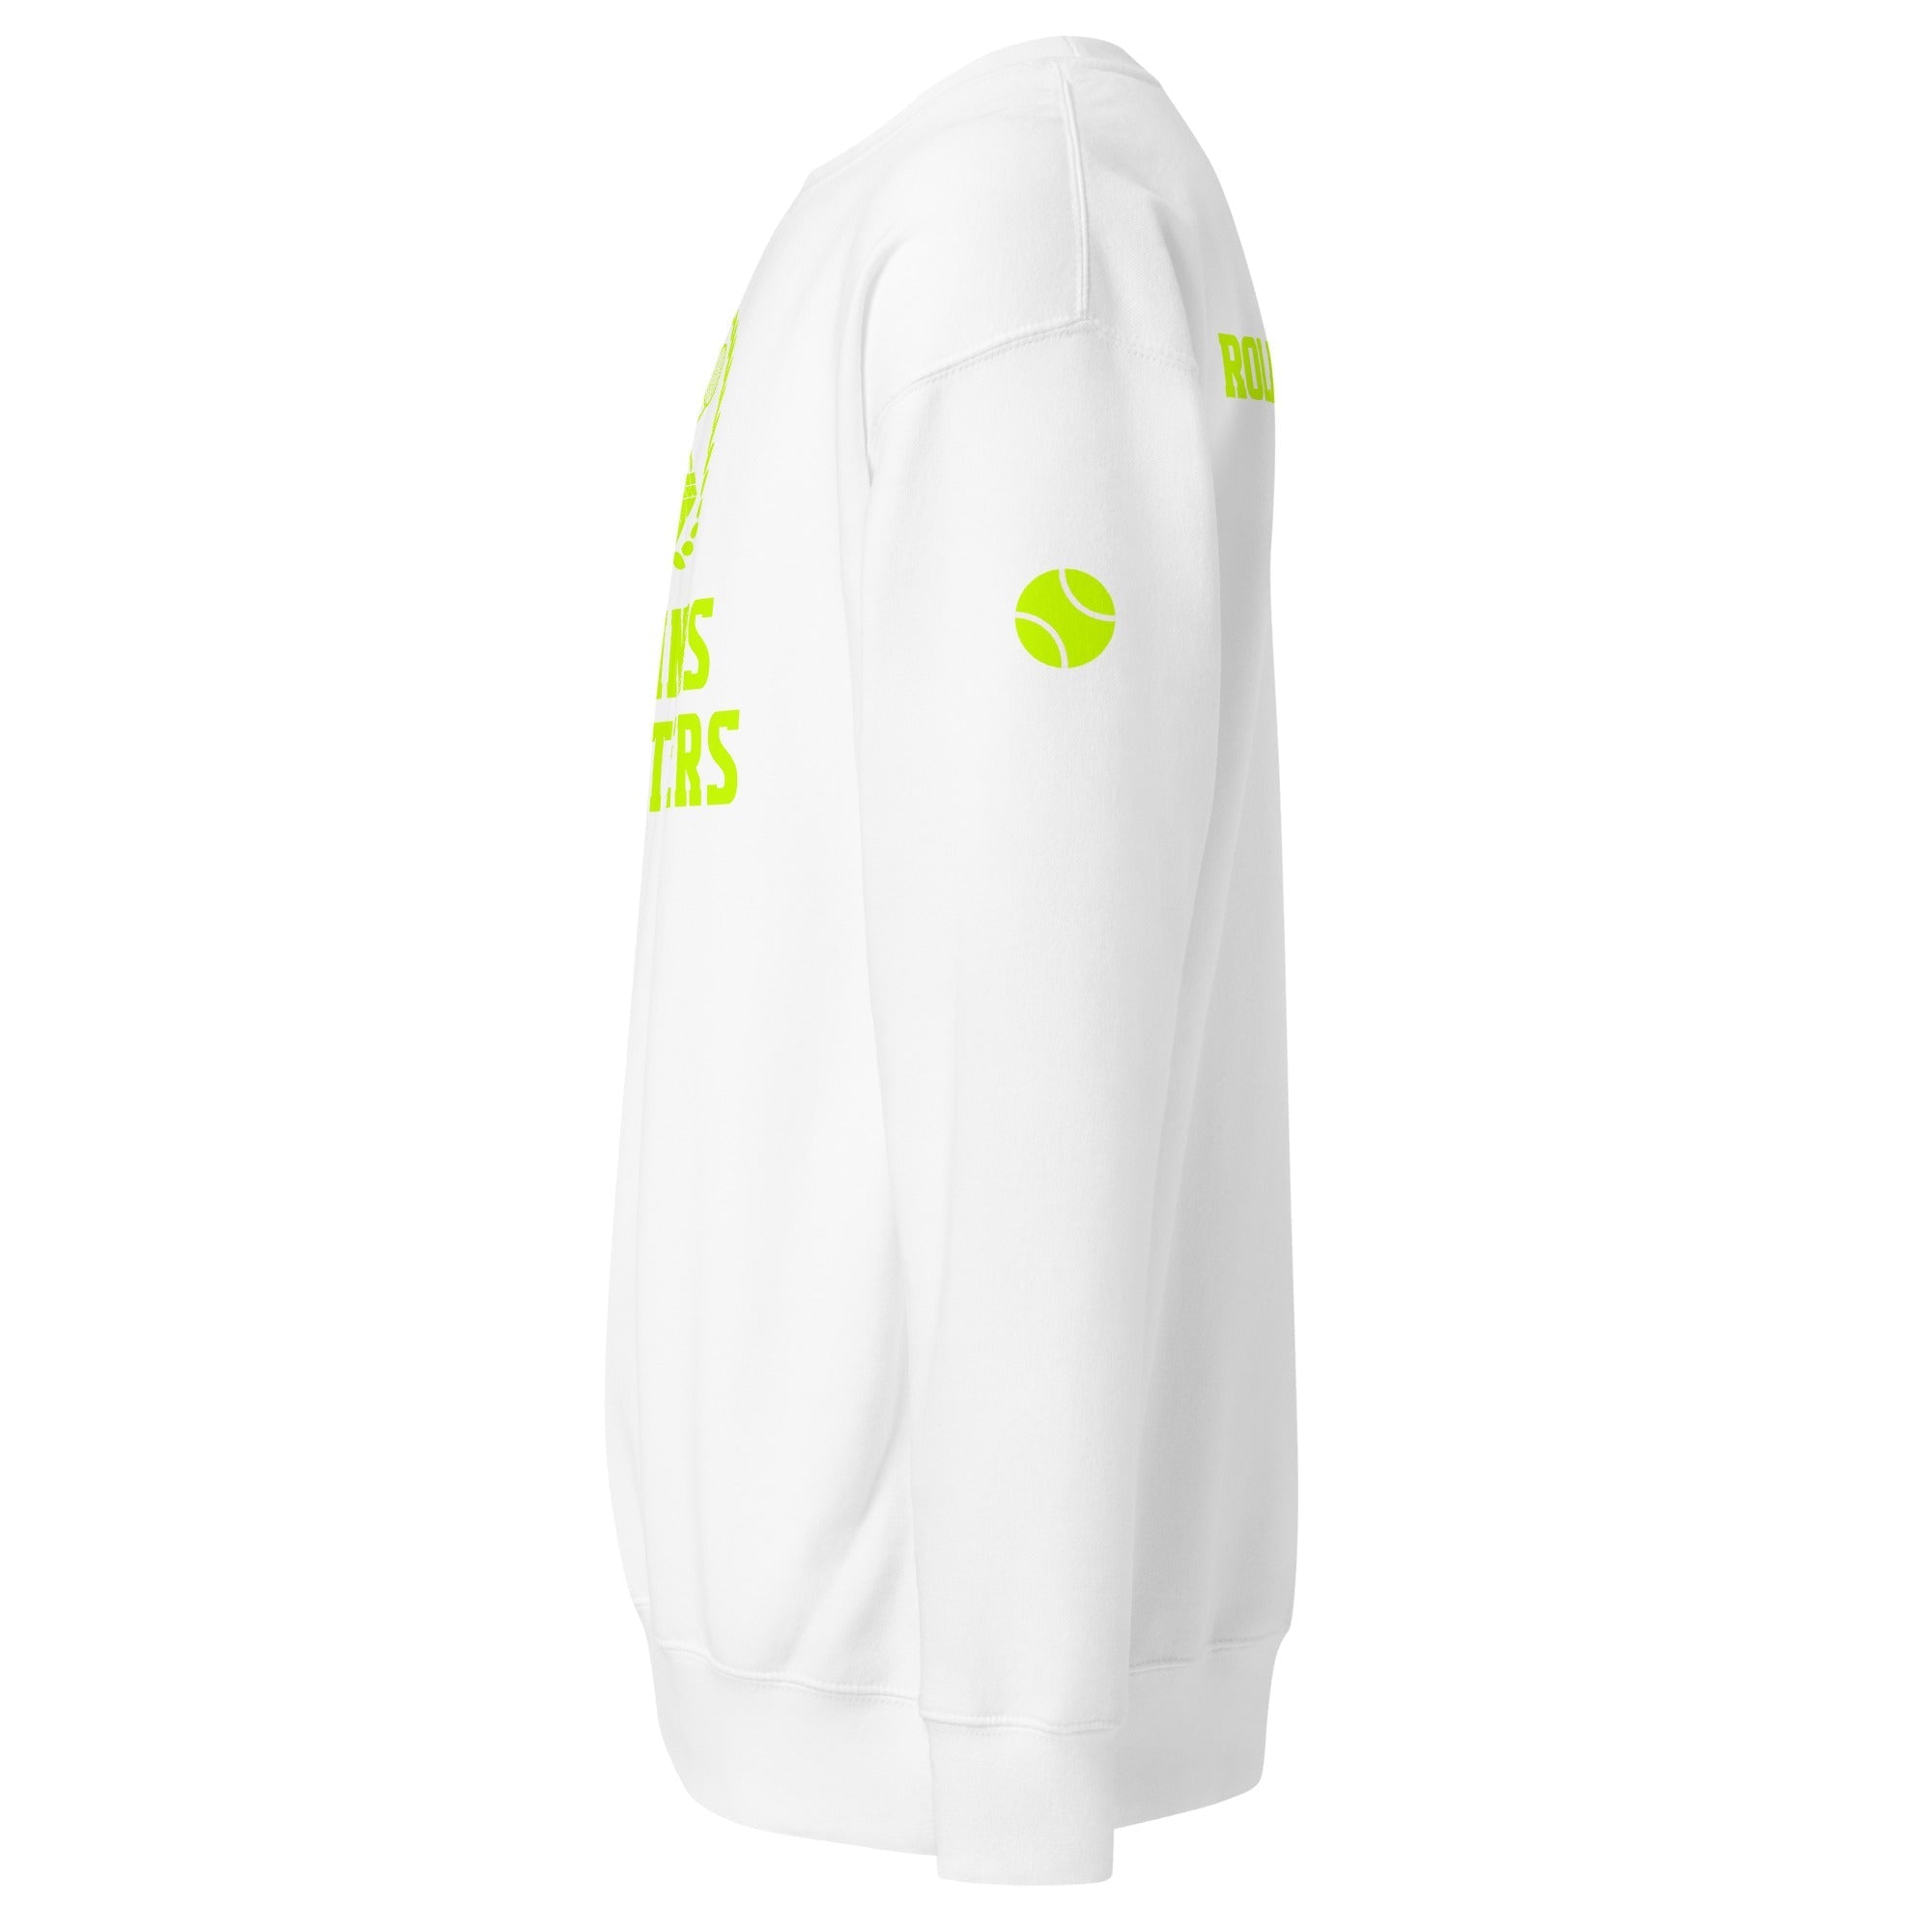 Unisex Premium Sweatshirt - Tennis Masters Roland Garros - GRAPHIC T-SHIRTS